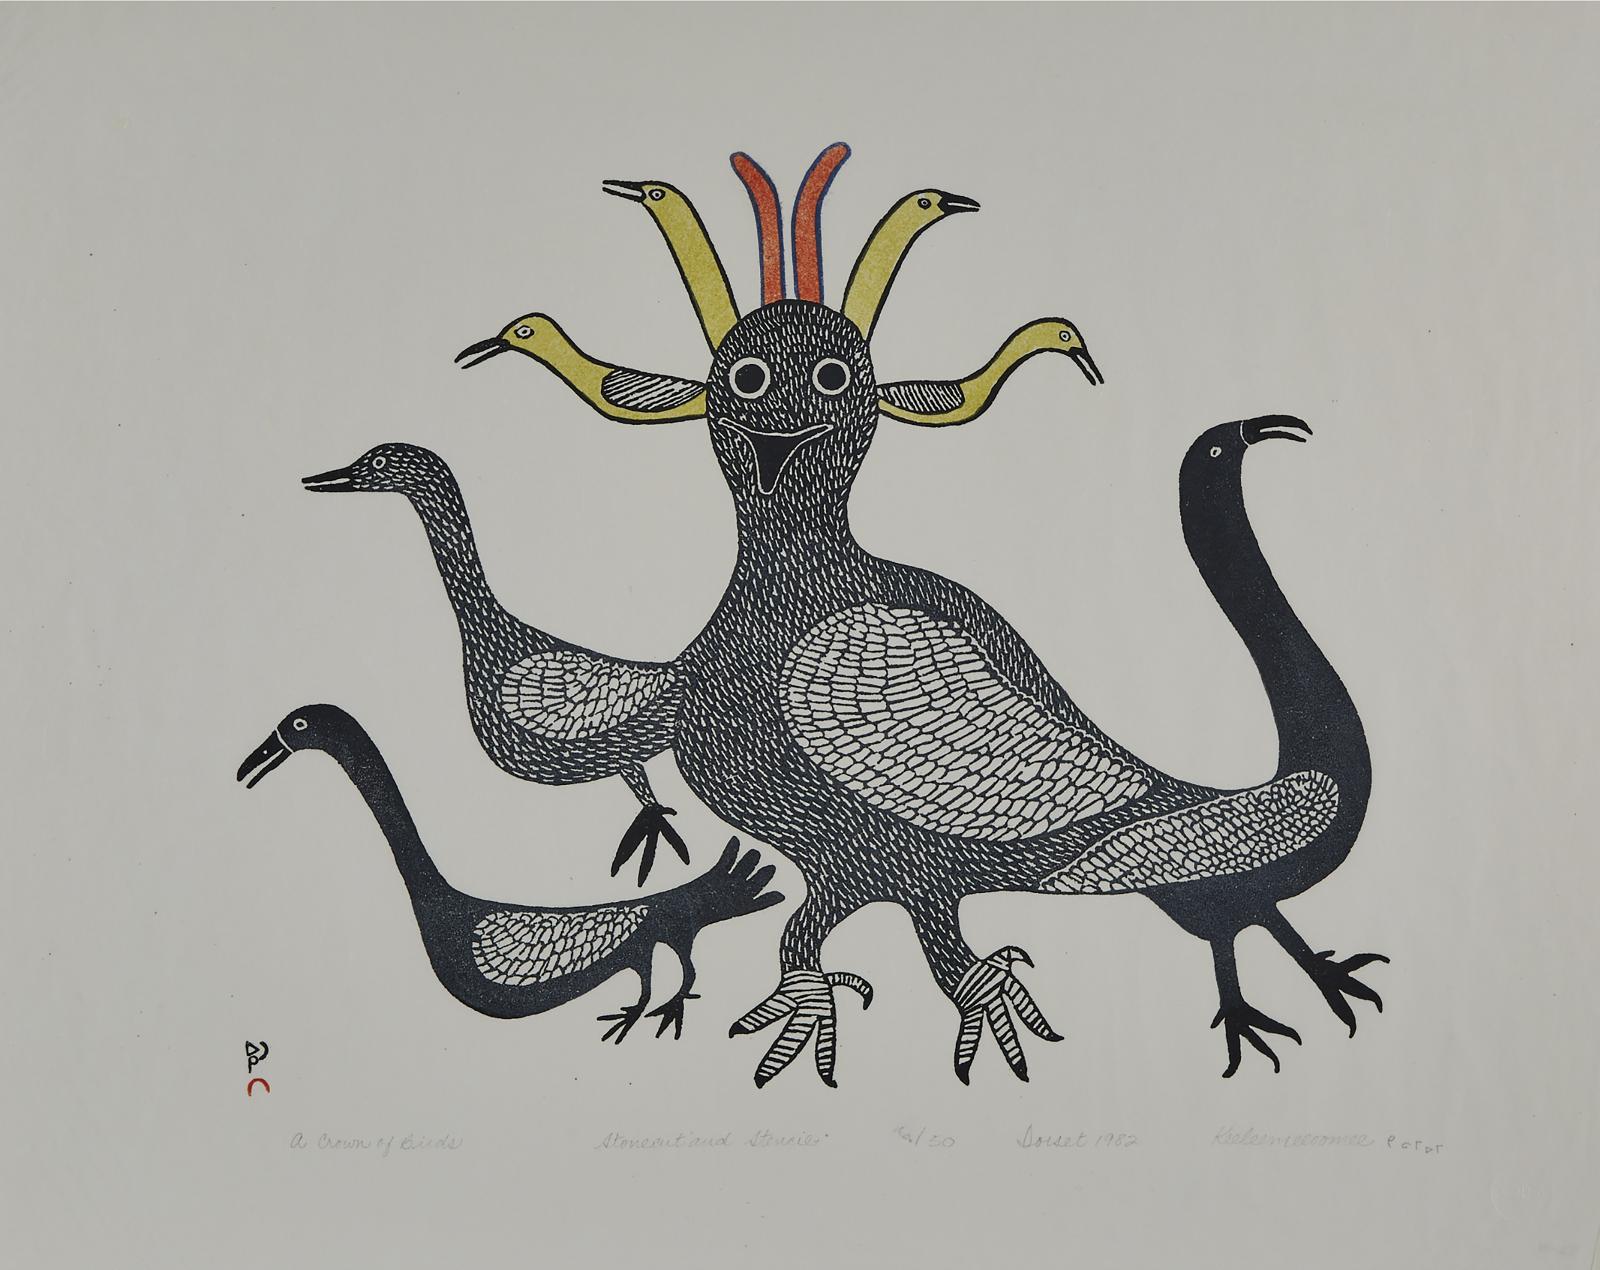 Keeleemeeoomee Samualie (1919-1983) - A Crown Of Birds